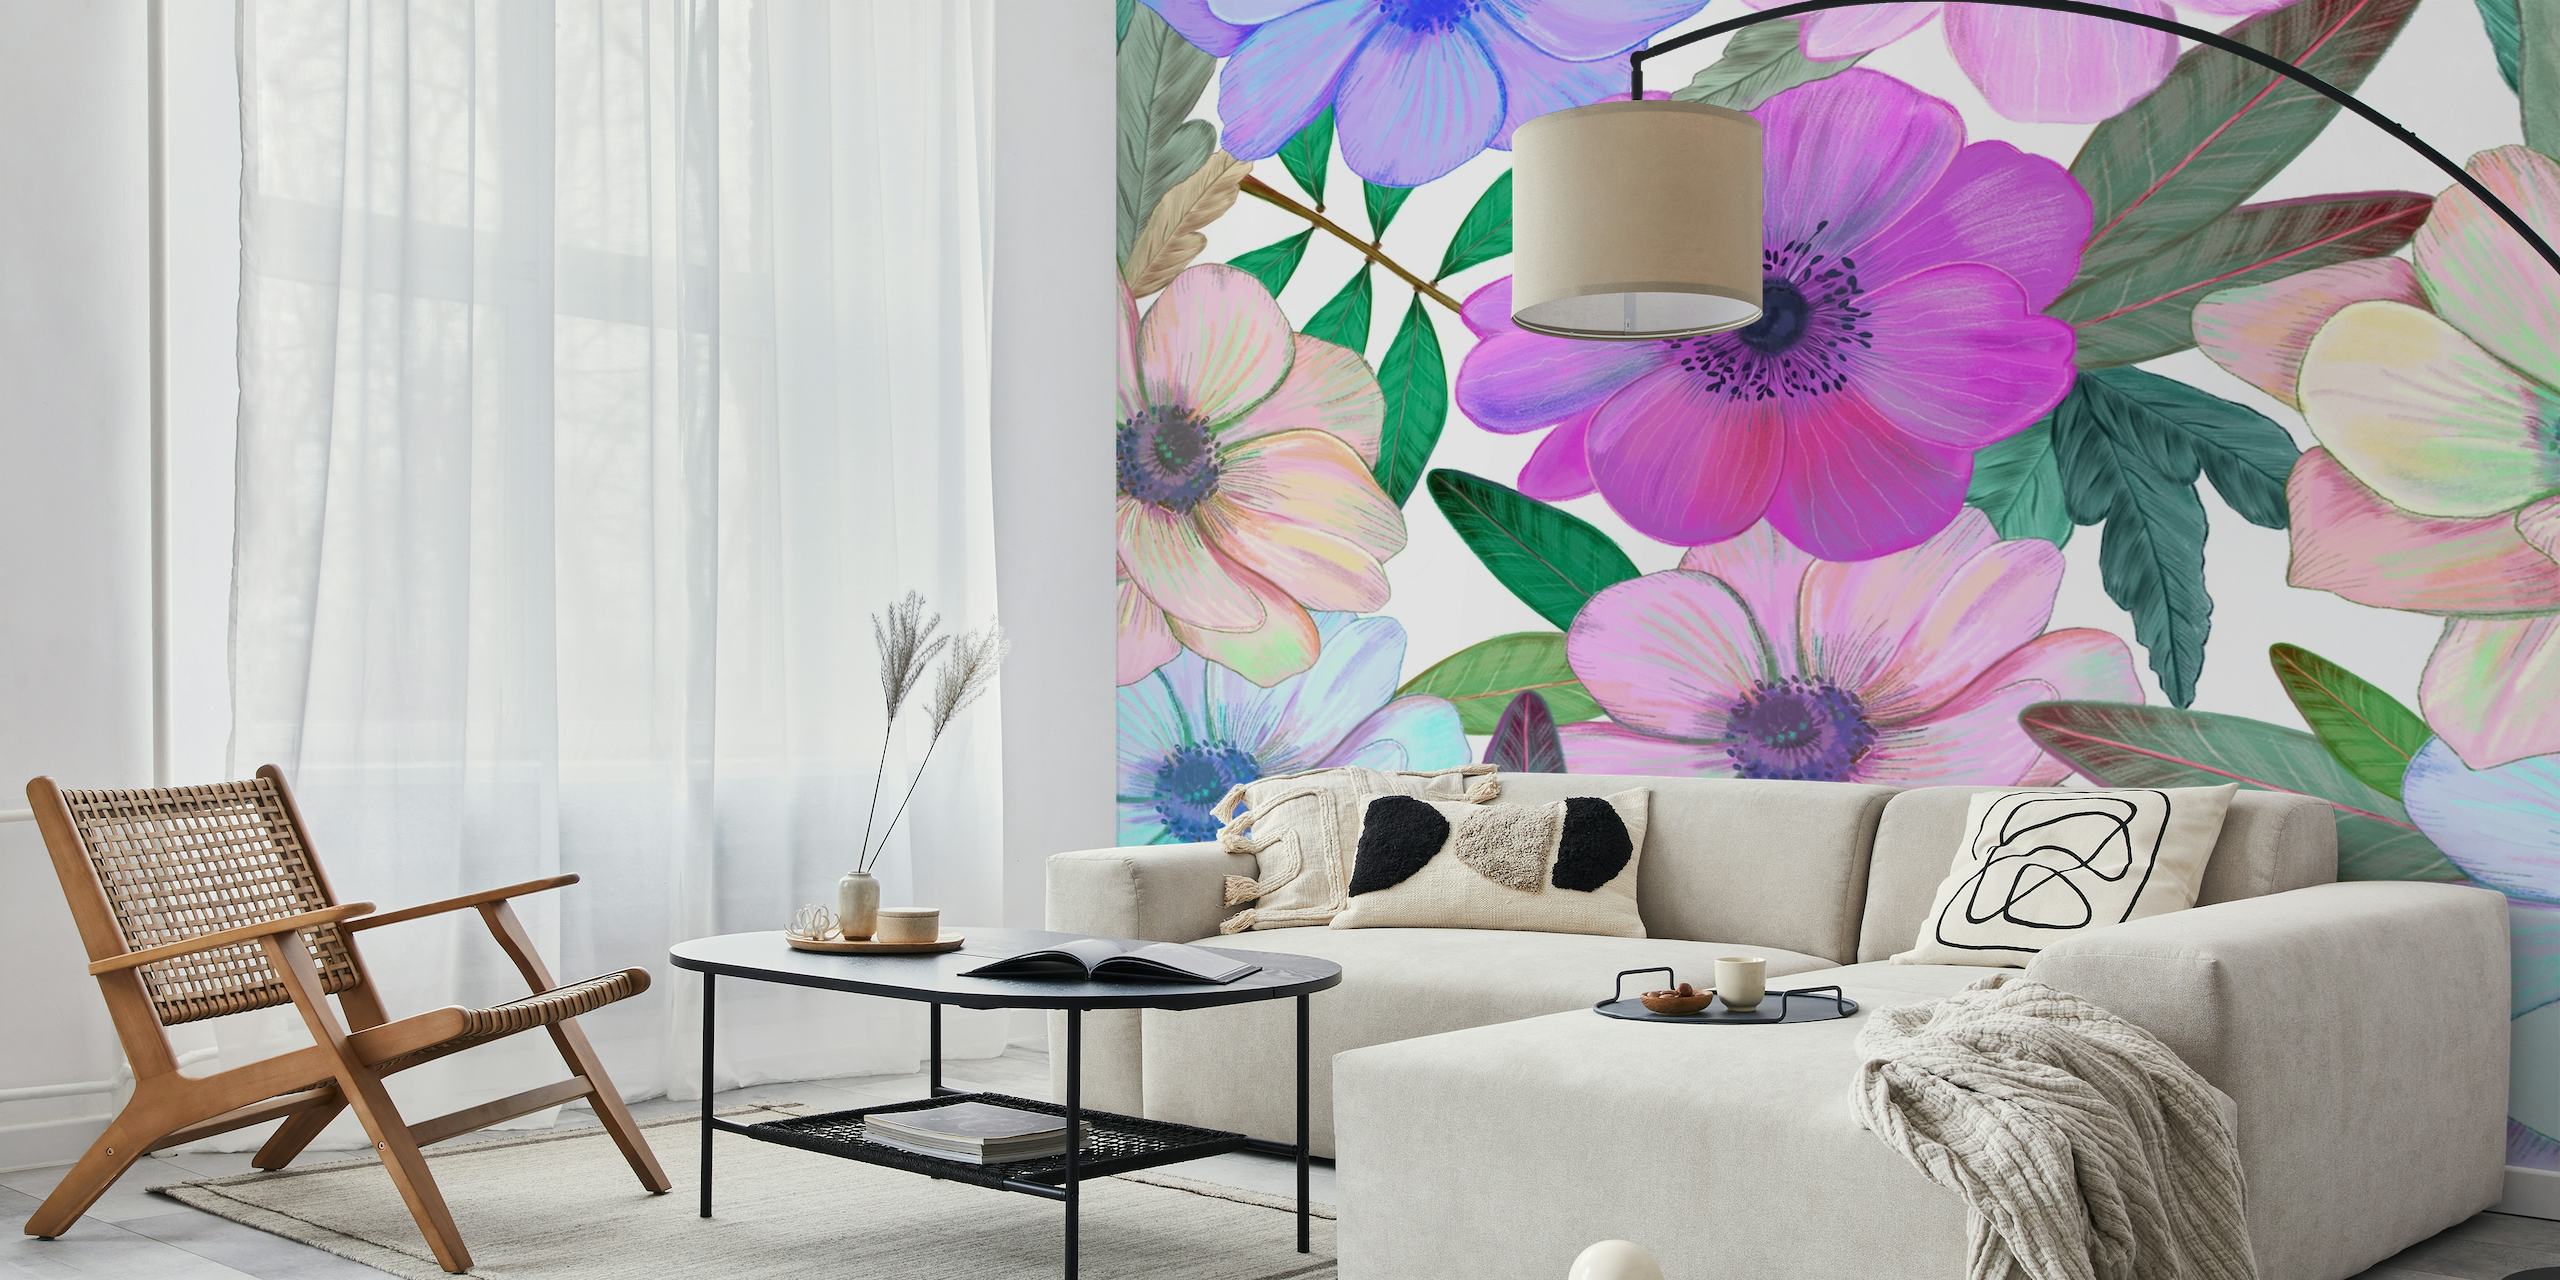 Ručno nacrtane anemone zidna slika s ljubičastim, ružičastim i plavim cvjetovima